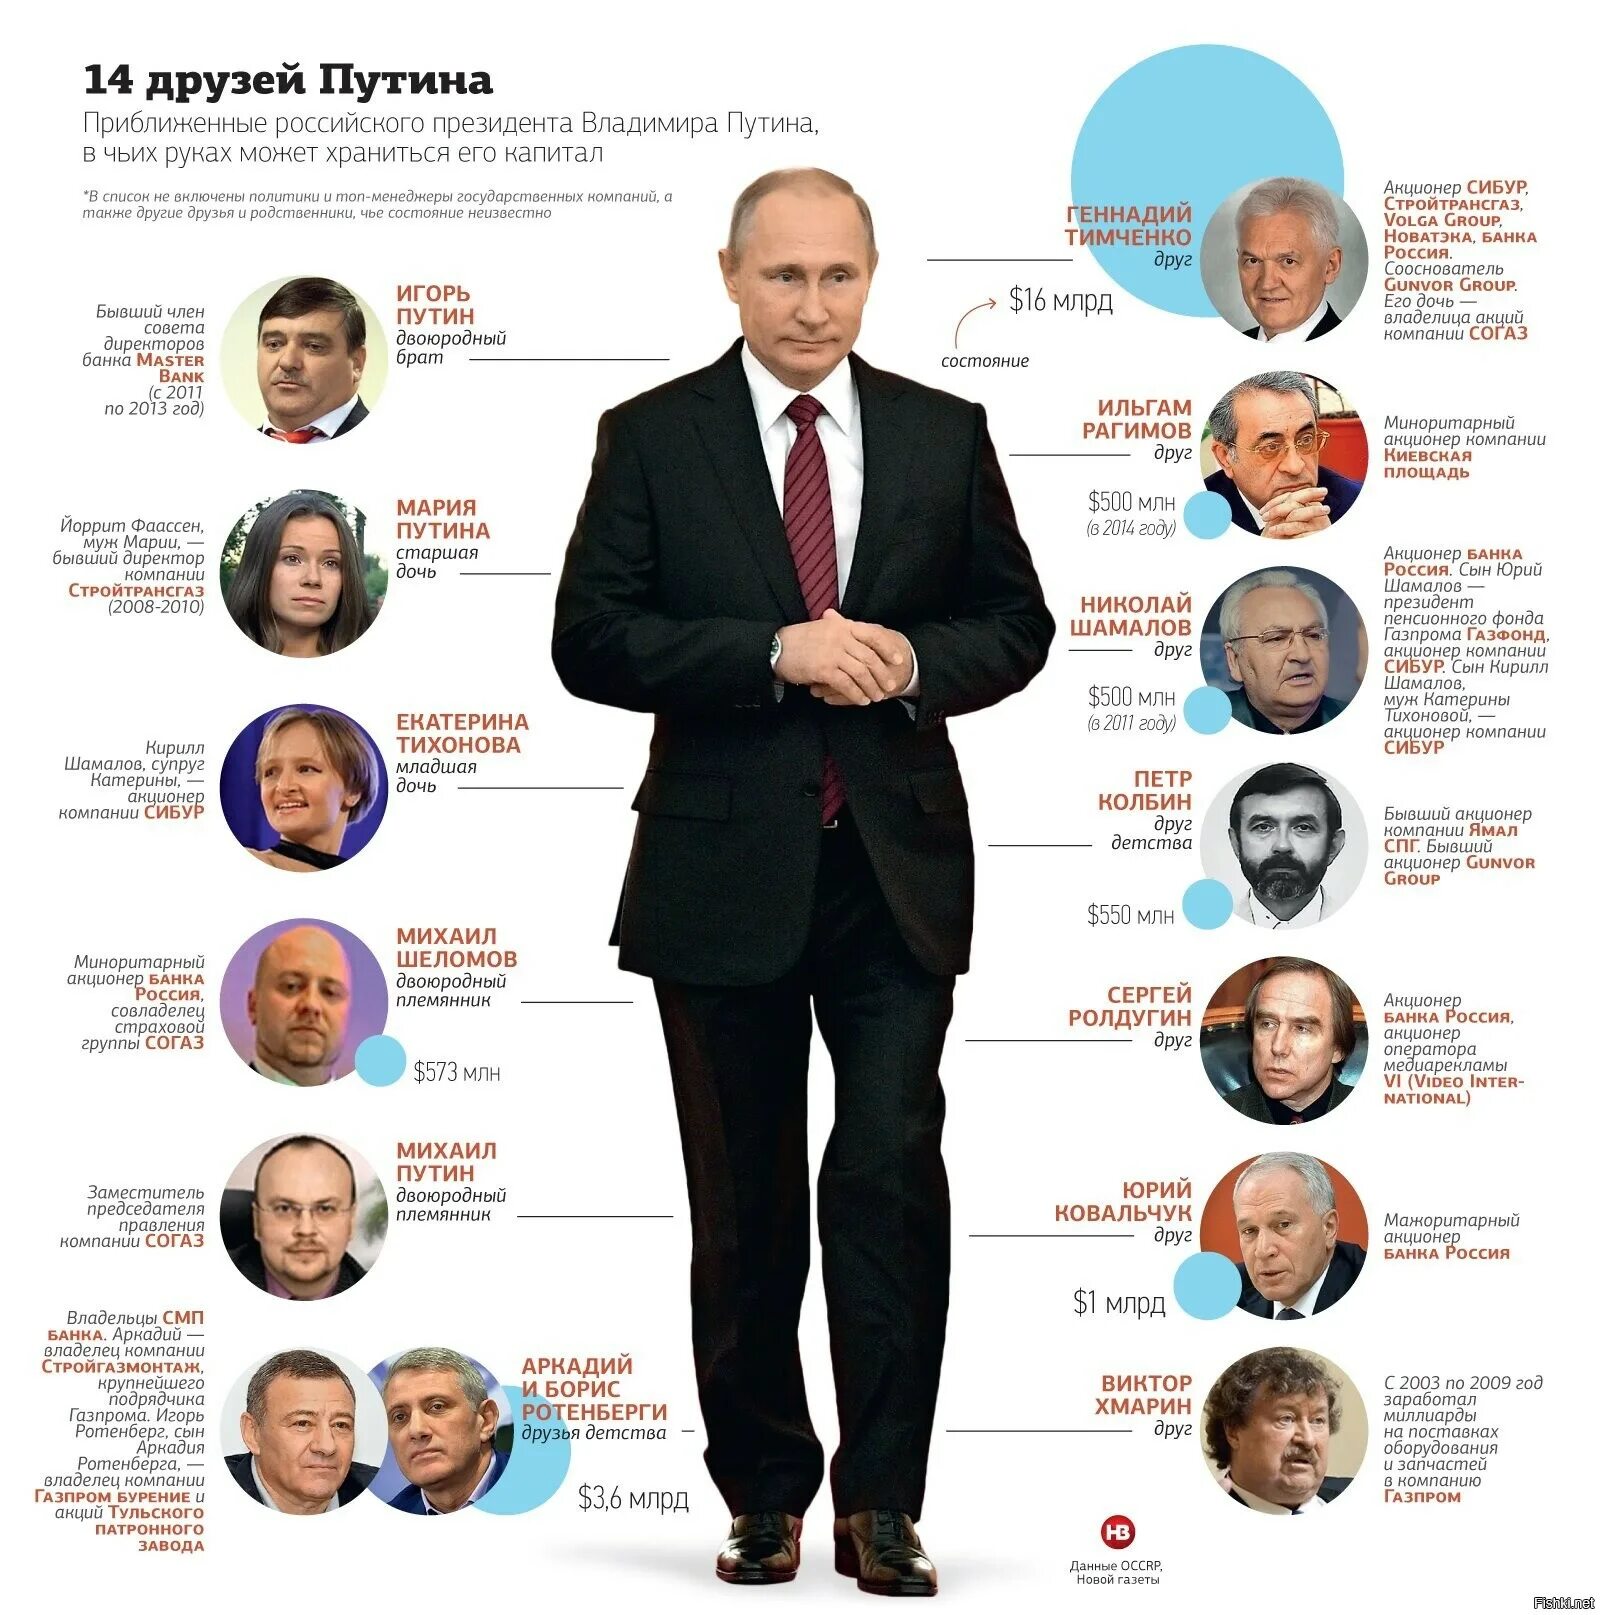 Известные акционеры. Друзья Путина во власти. Окружение Путина фамилии. Друзья Путина миллиардеры. Родственники Путина.